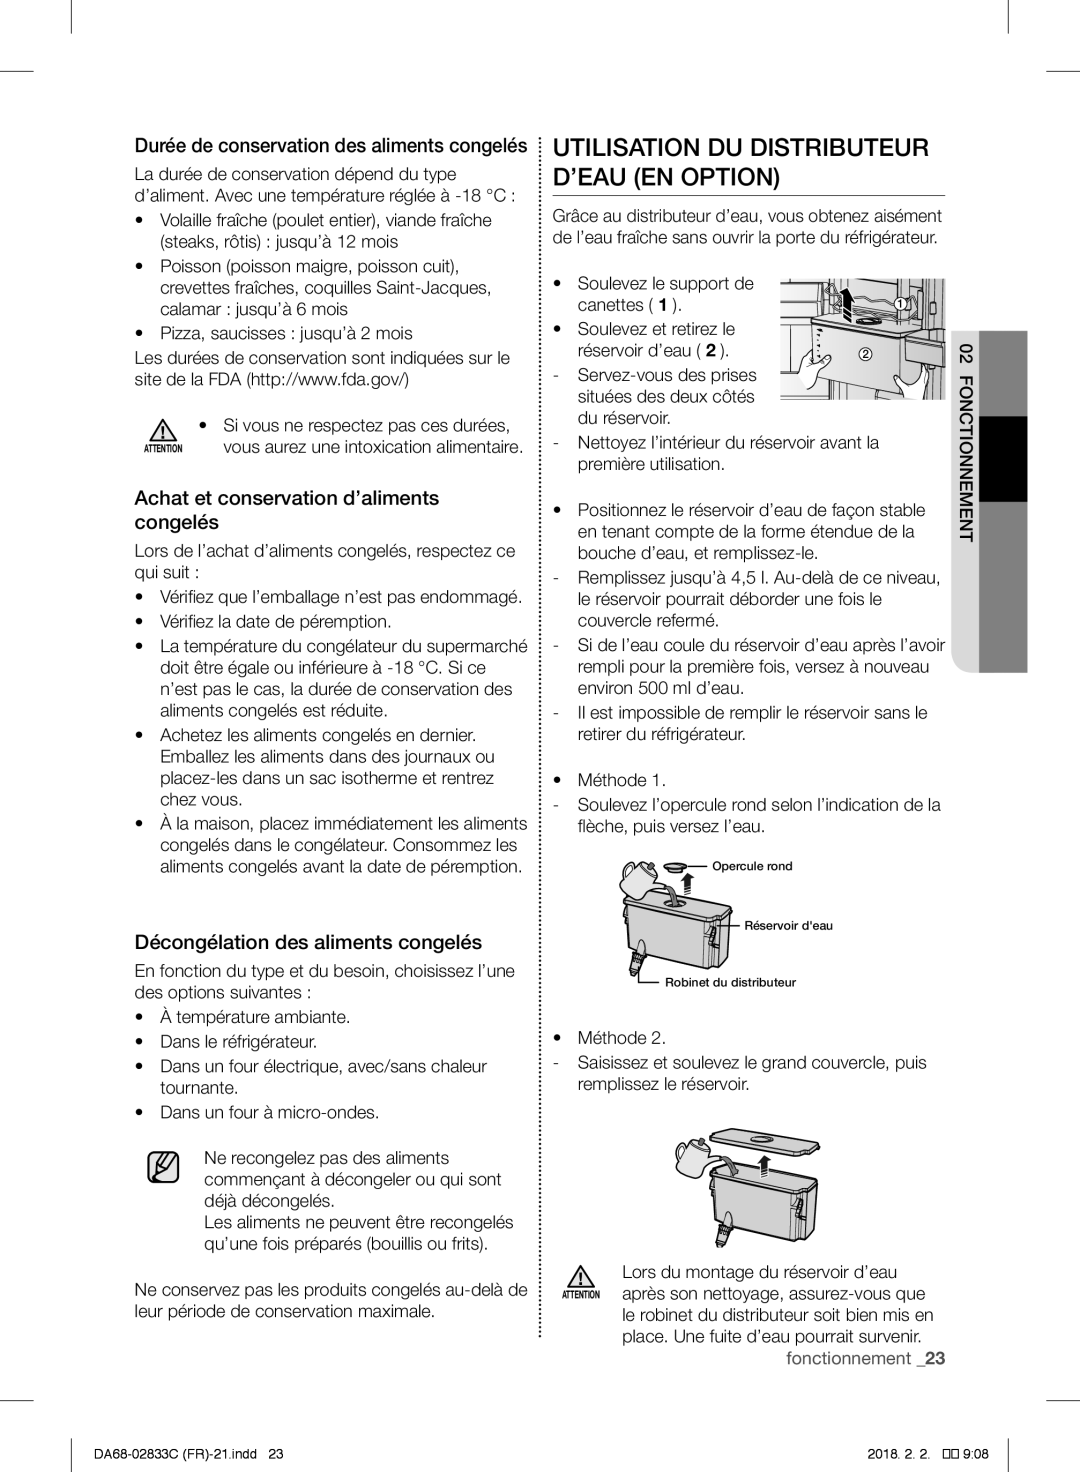 Samsung RB37J5820SA/EF manual Utilisation Du Distributeur D’Eau En Option, Achat et conservation d’aliments congelés 